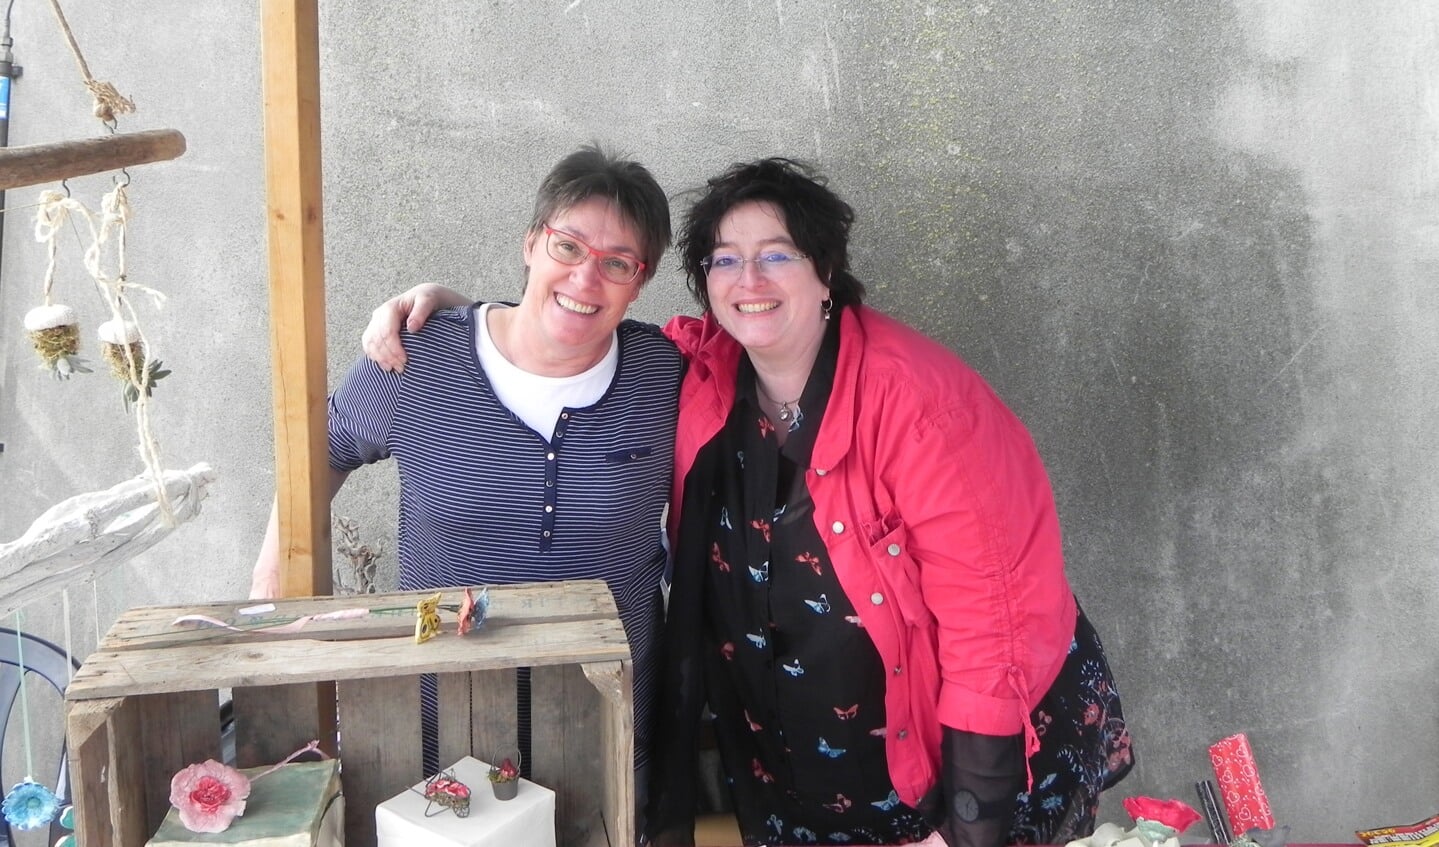 Zuterliefde: Buurvrouw Carla bood haar zelfgemaakte keramiek aan en had daarbij versterking gekregen van haar zus uit Limburg.                                